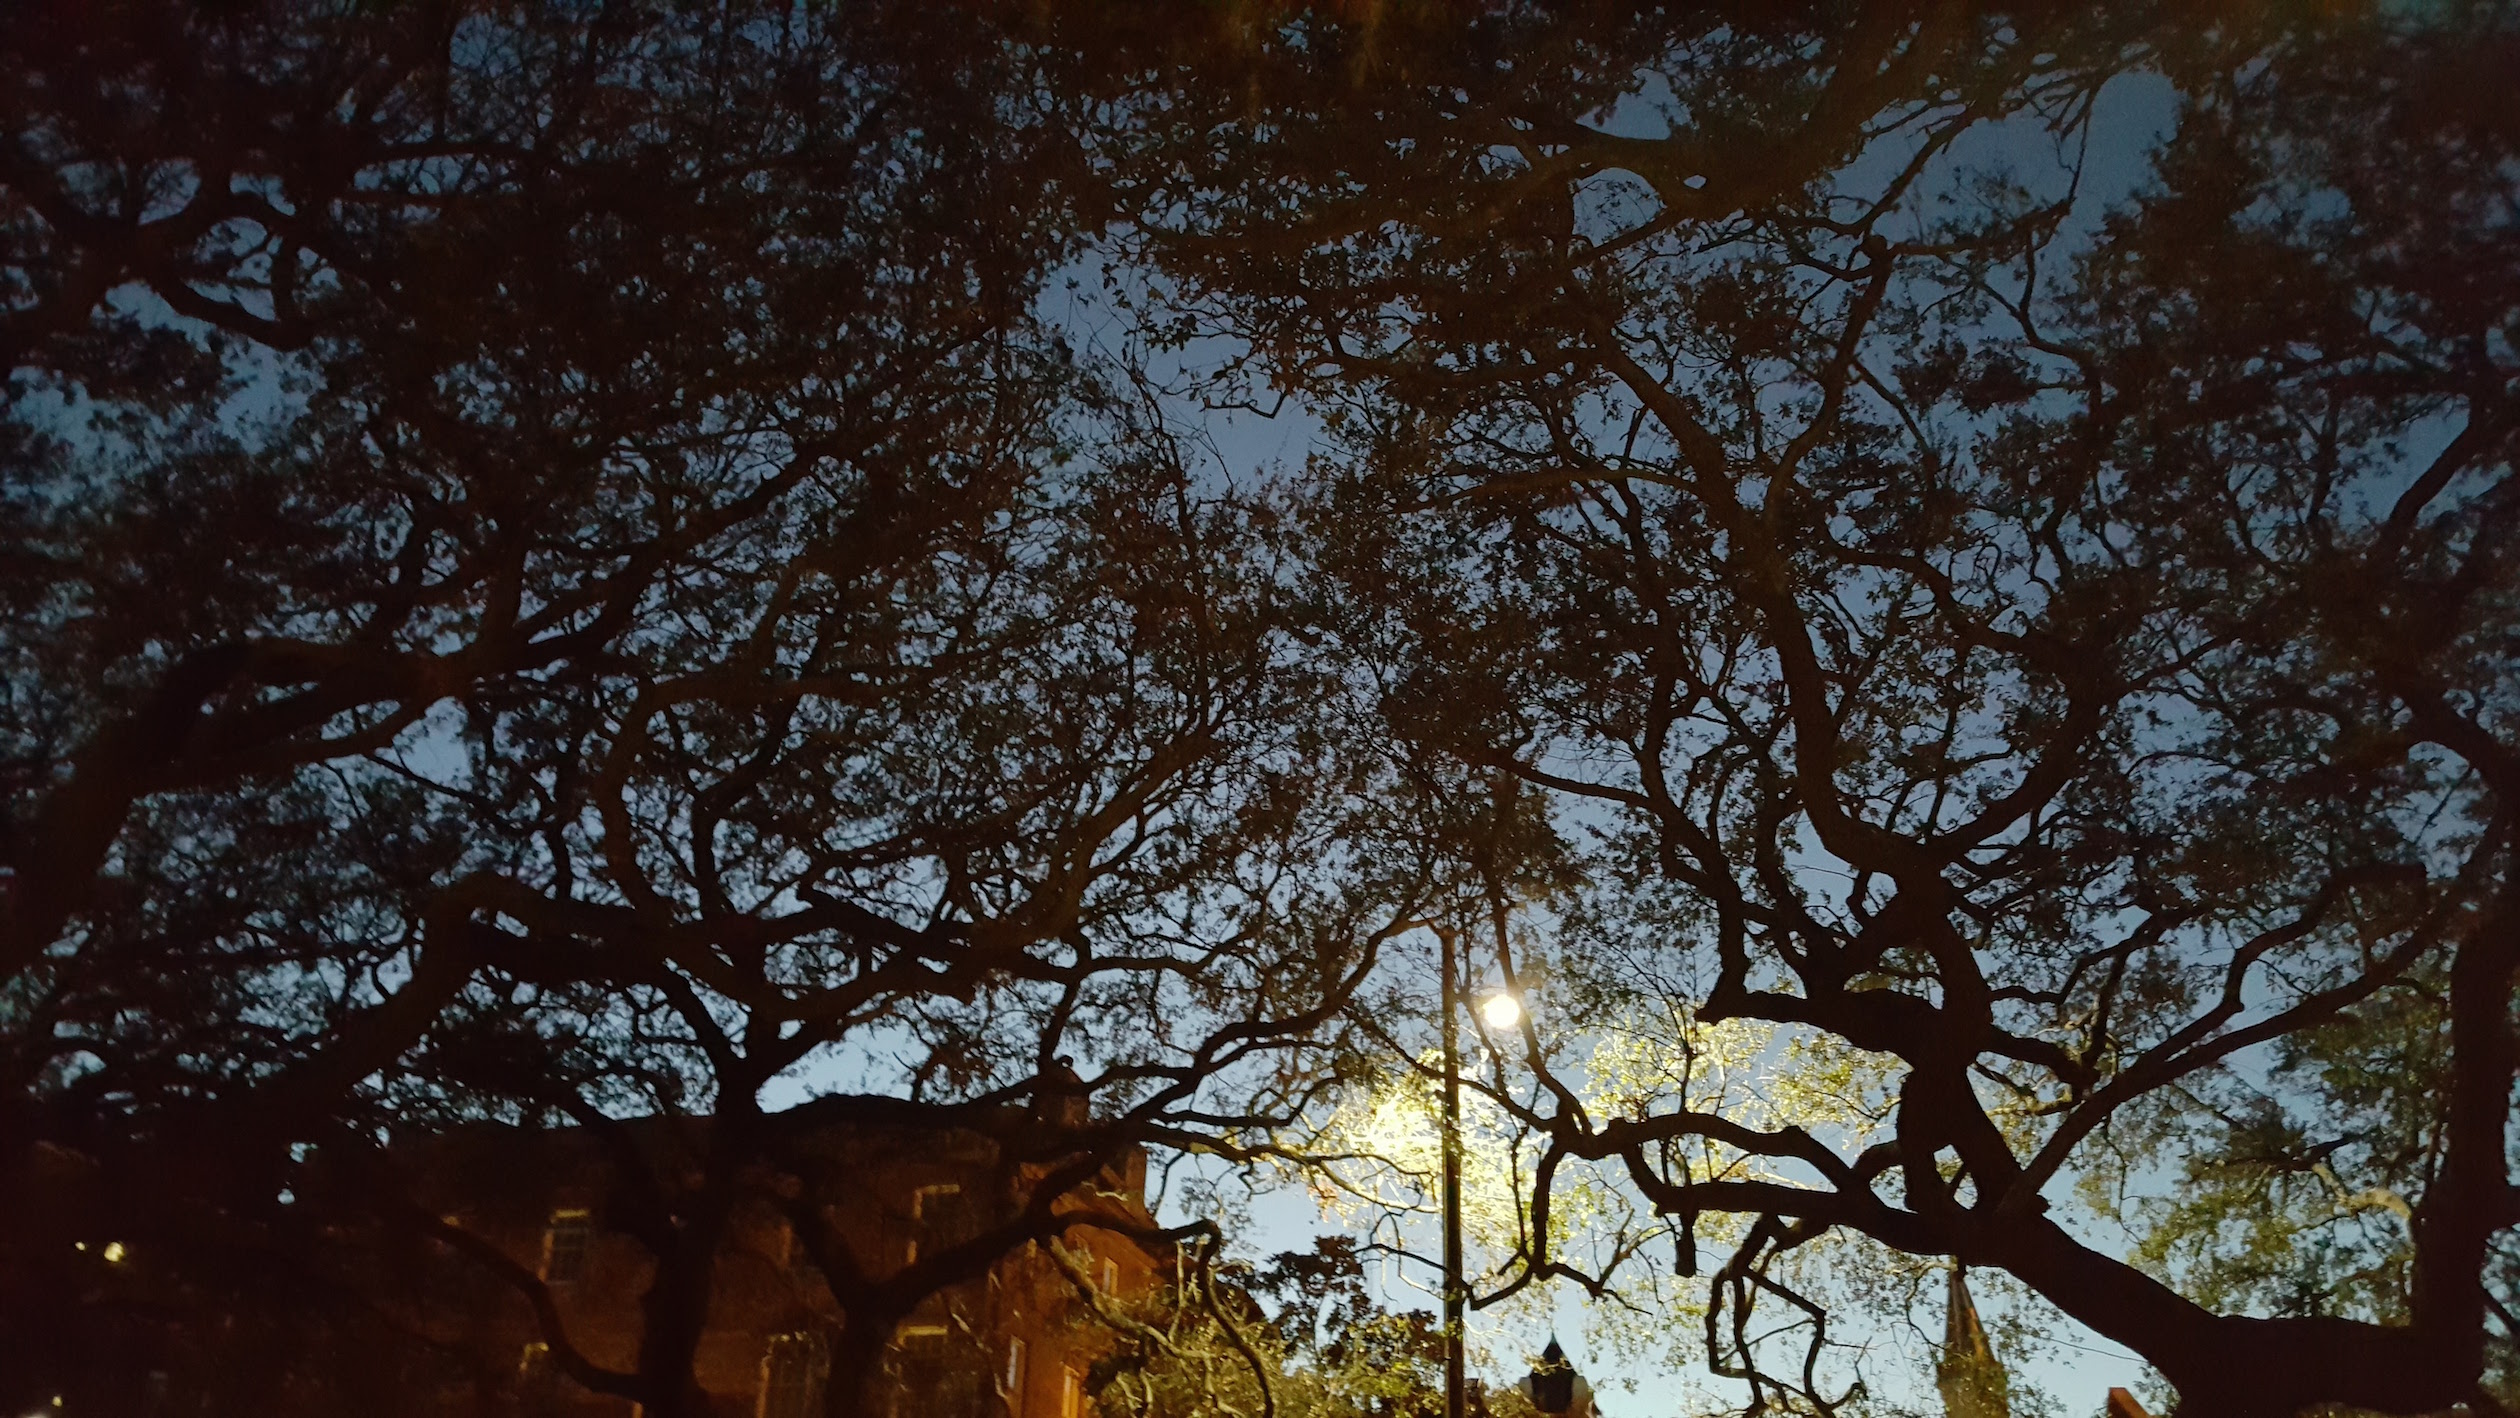 Sundown in Savannah near City Market. Photo: Moi.